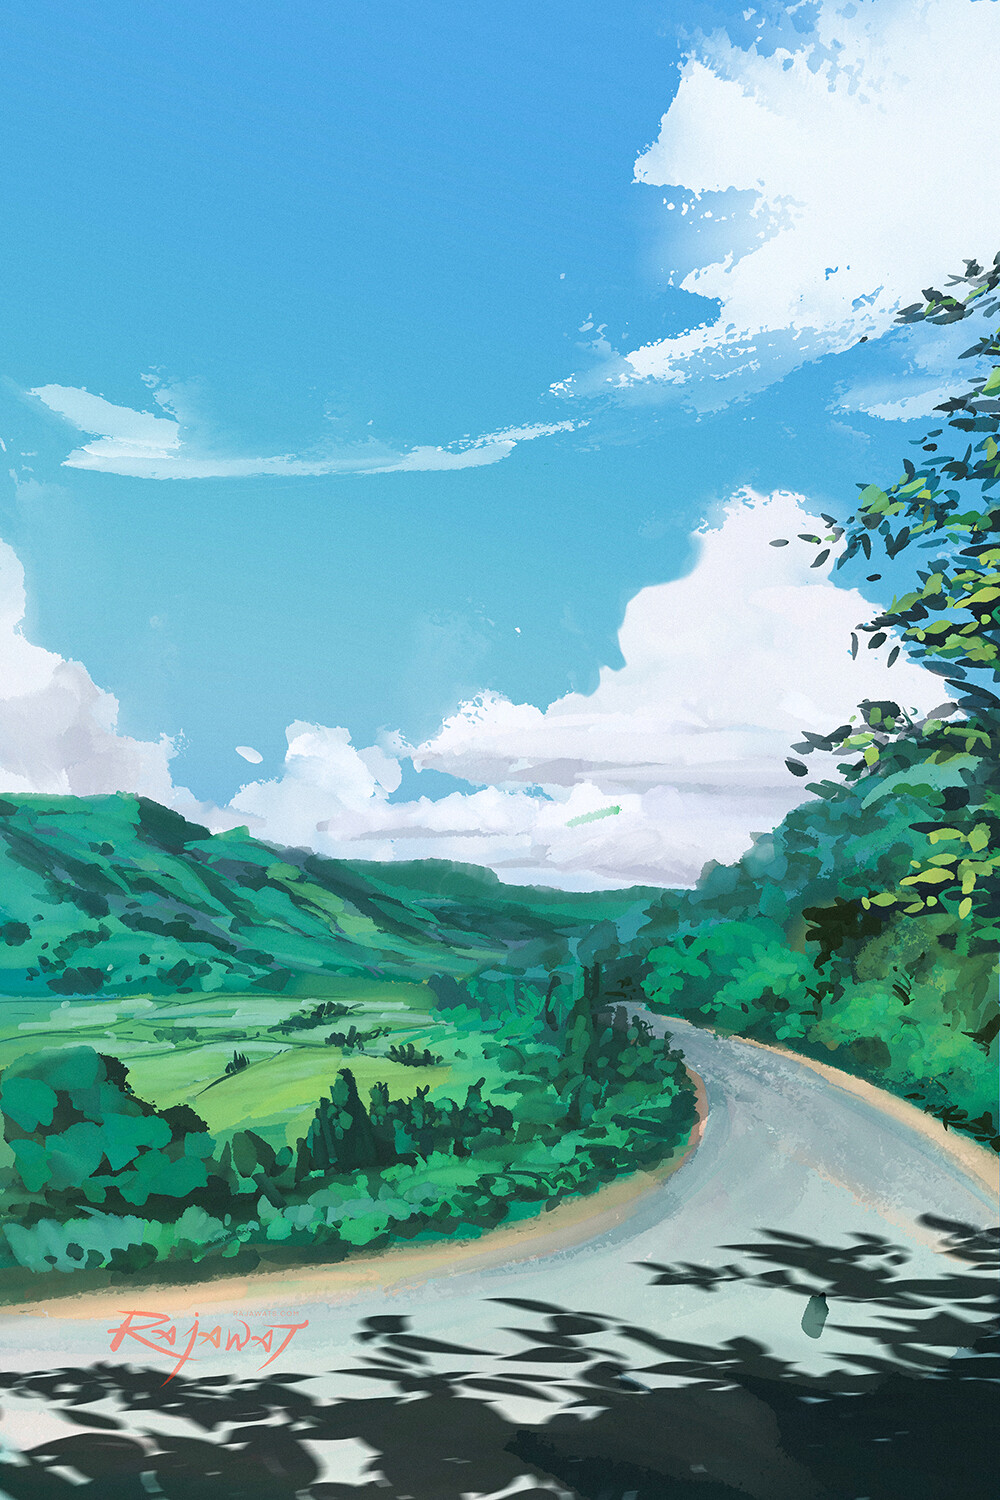 Ref: Ghibli background